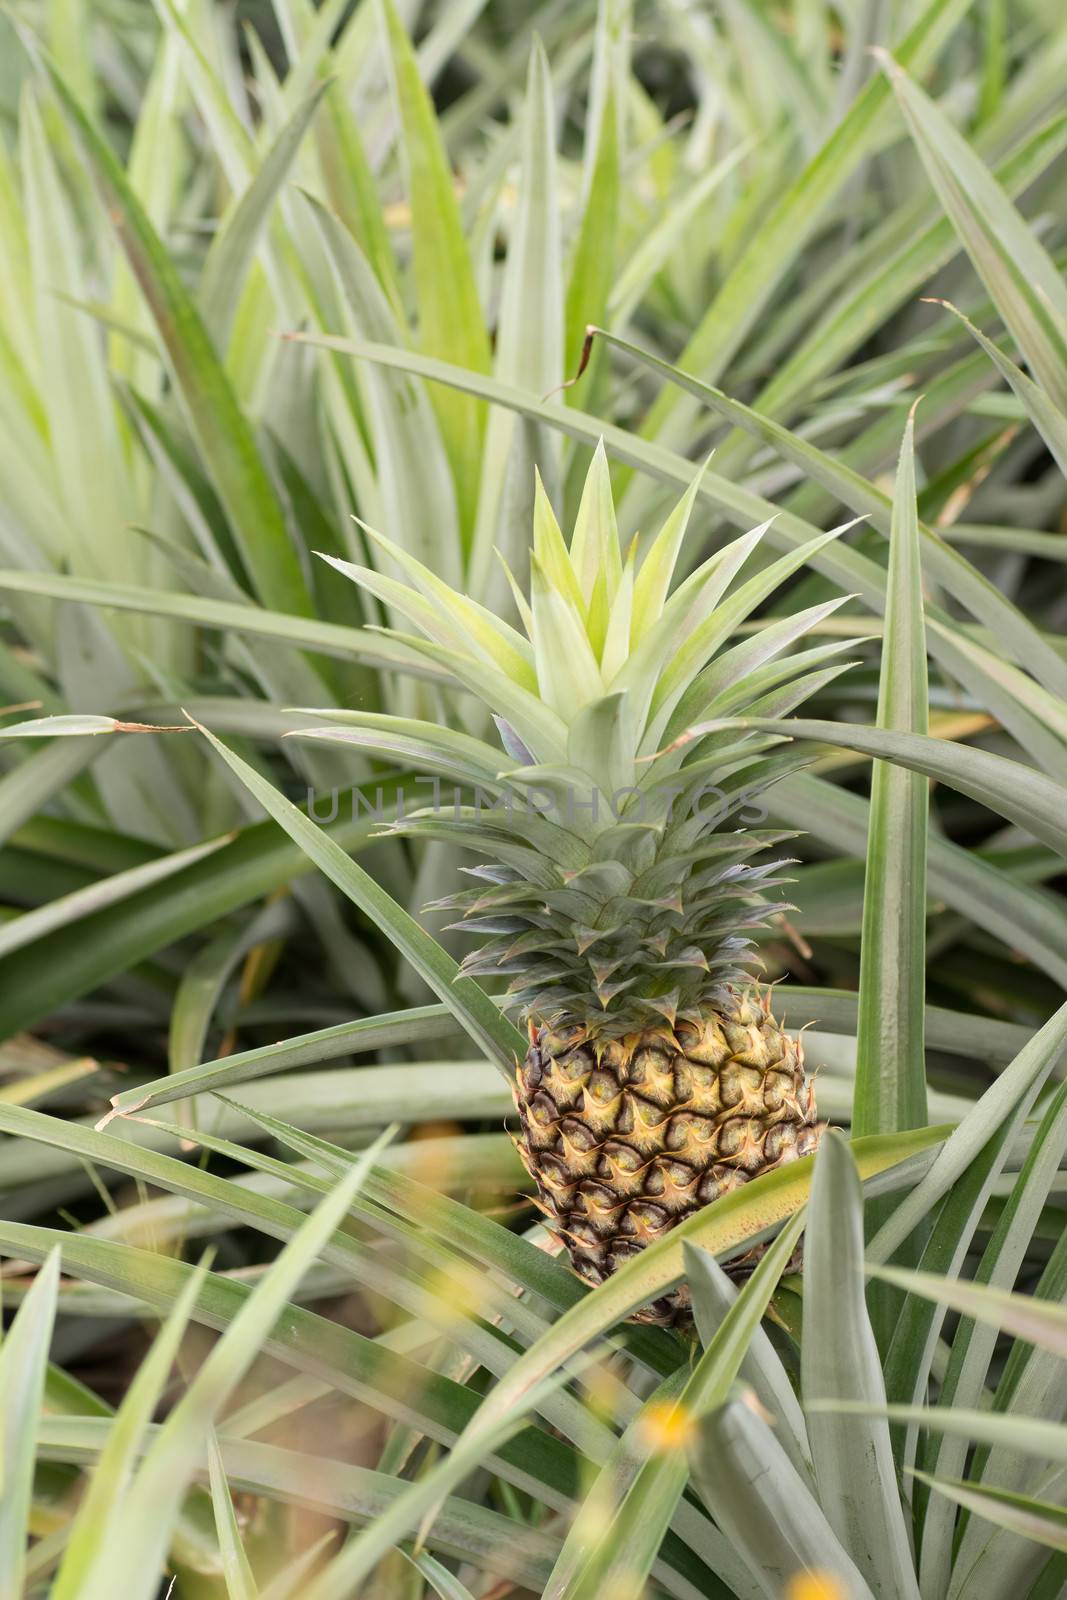 Pineapple farm by elwynn